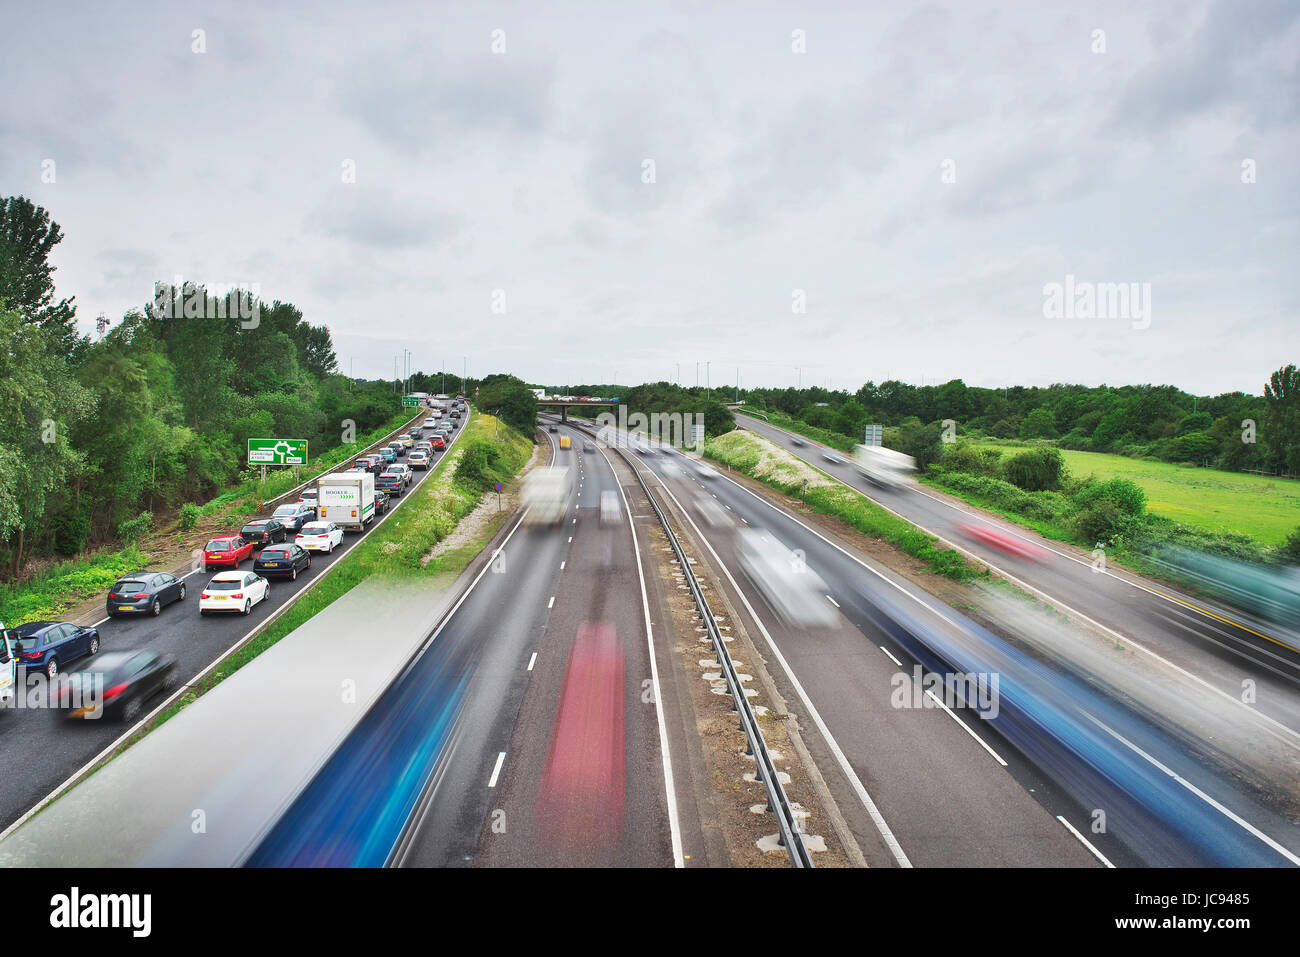 Tráfico pesado durante las horas pico en la A14 fuera de Cambridge, mostrando el tráfico en cola y blur de tráfico en movimiento Foto de stock